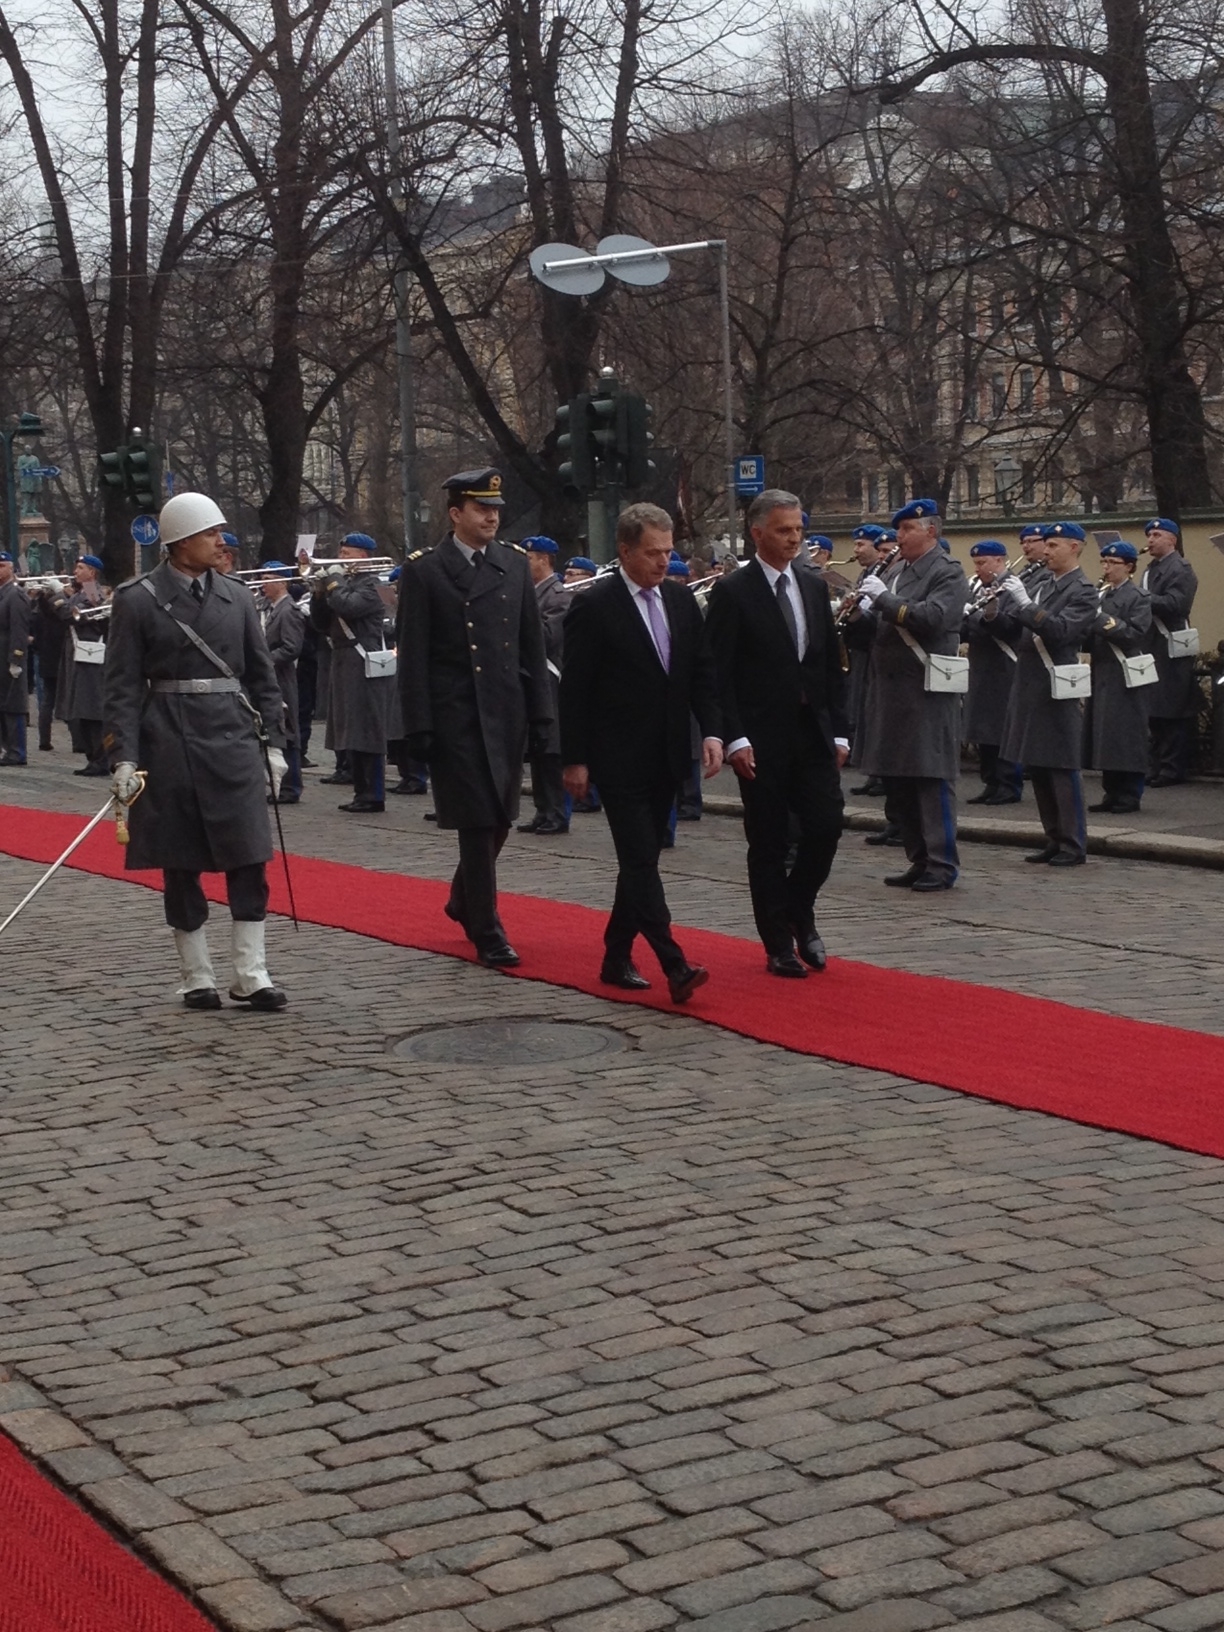 Didier Burkhalter e Sauli Niinistö sul tappeto rosso durante gli onori militari.